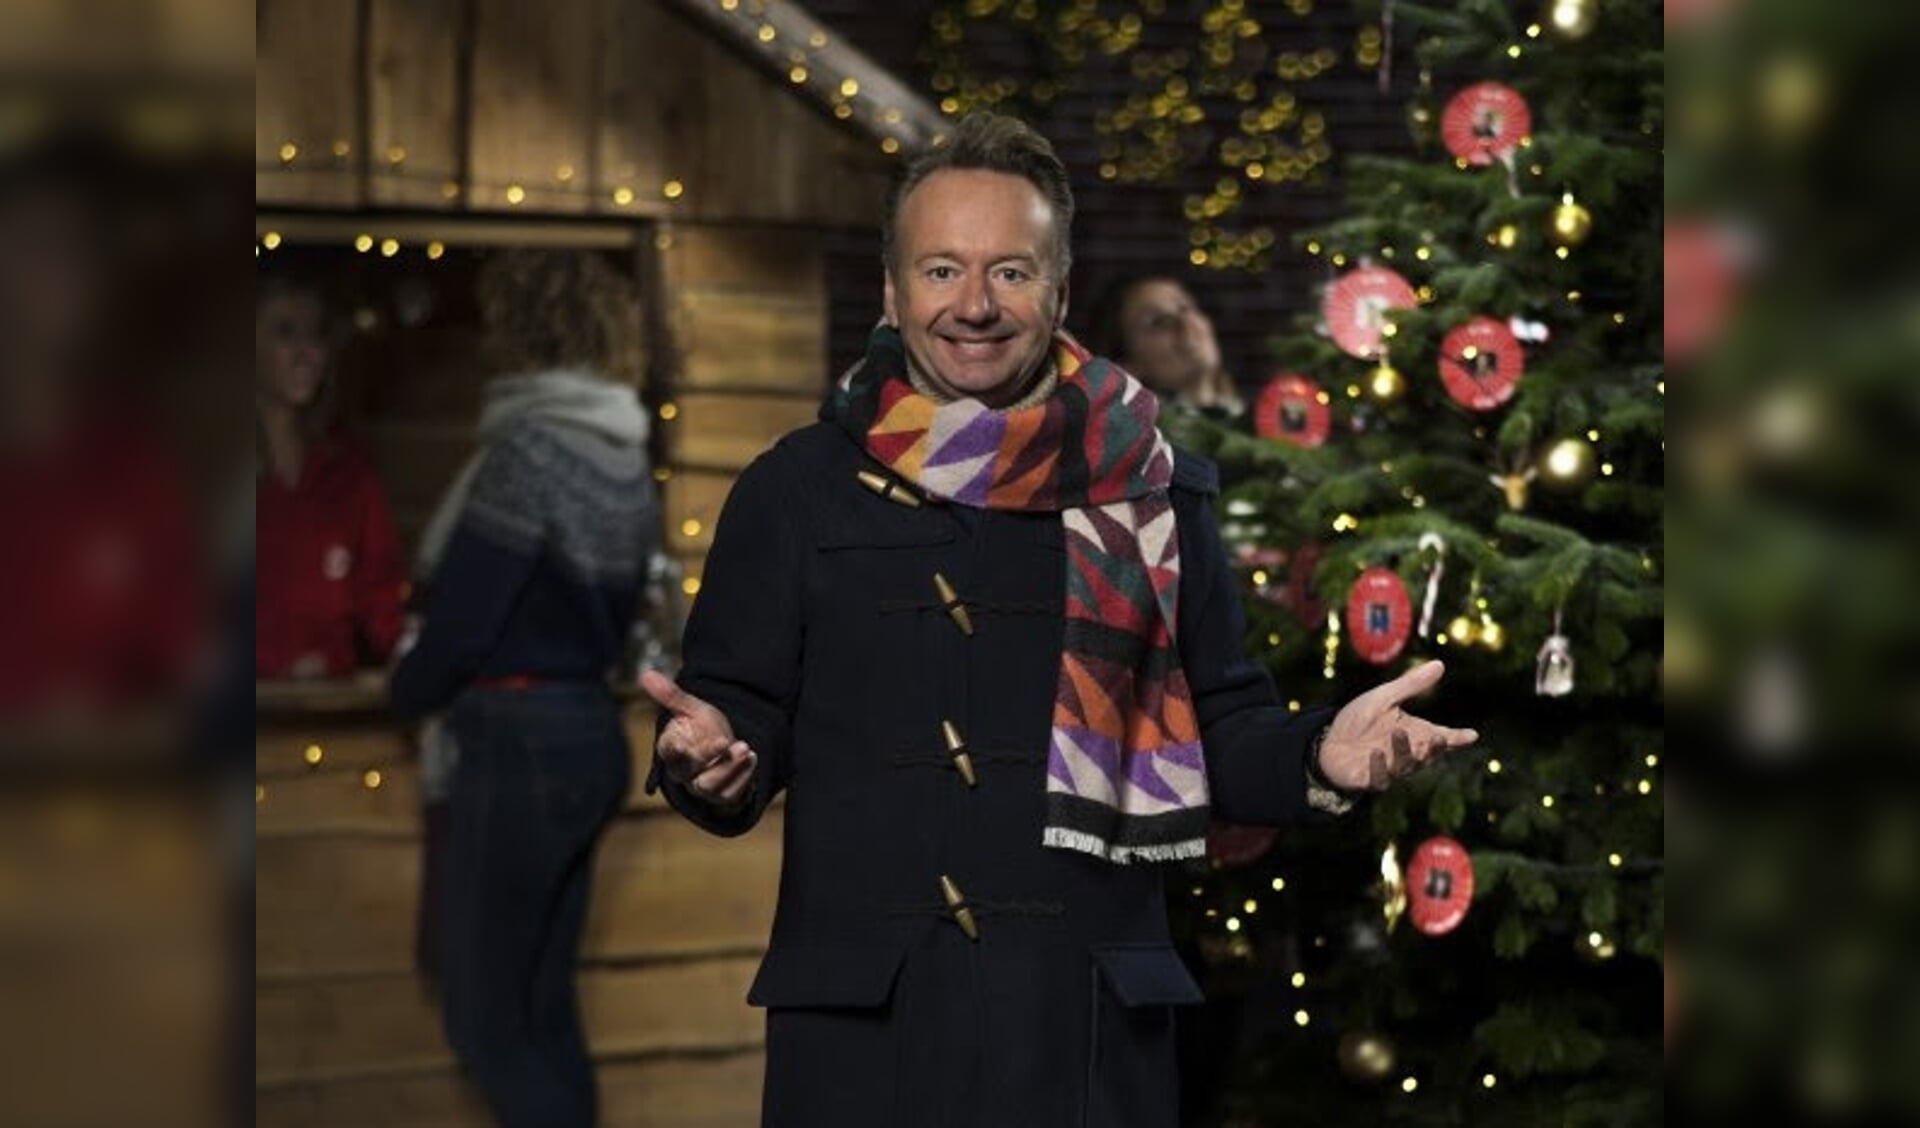 Joris Linssen strijkt met zijn tv-programma Joris' Kerstboom neer op het Abdijplein in Middelburg.